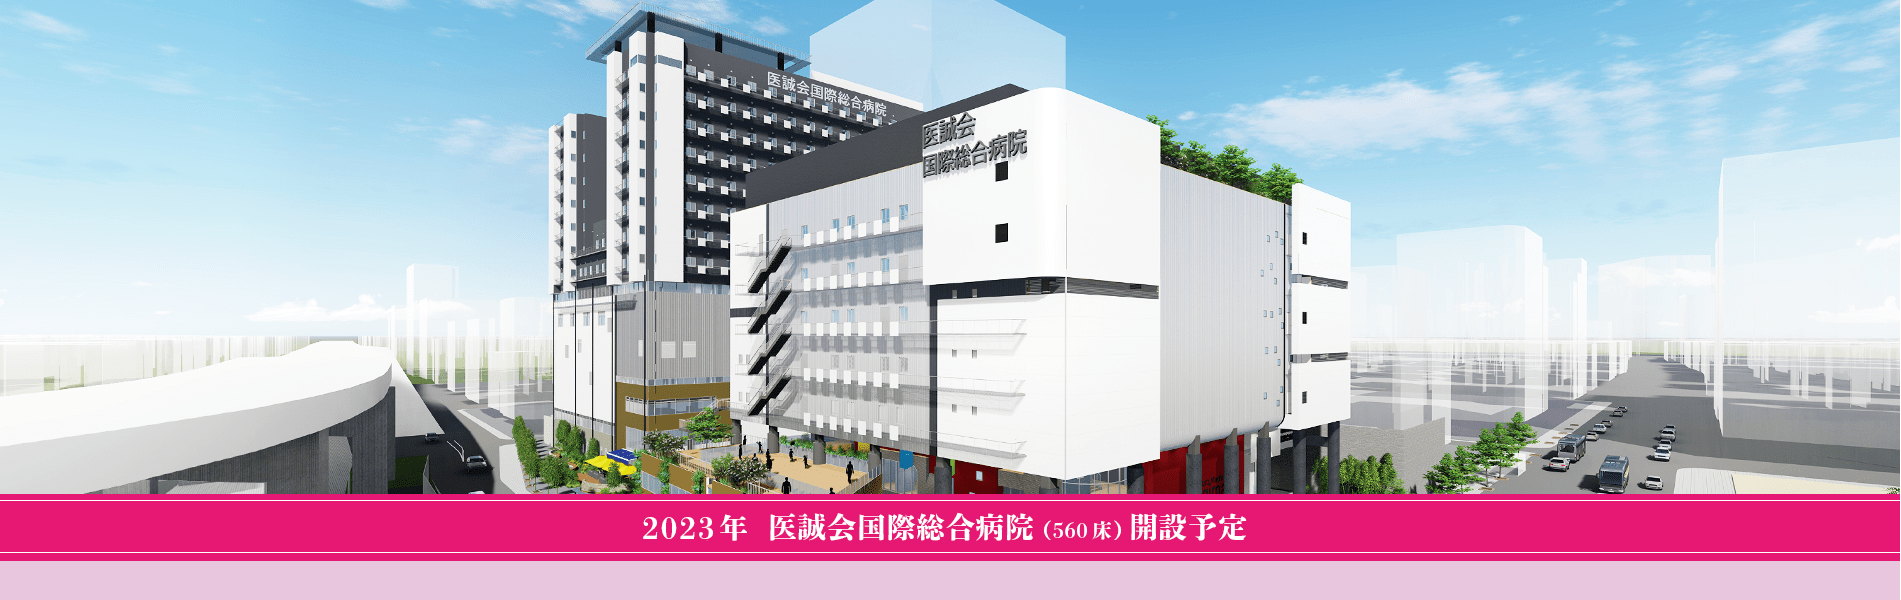 2022年大阪医誠会国際総合病院（560床）開設予定